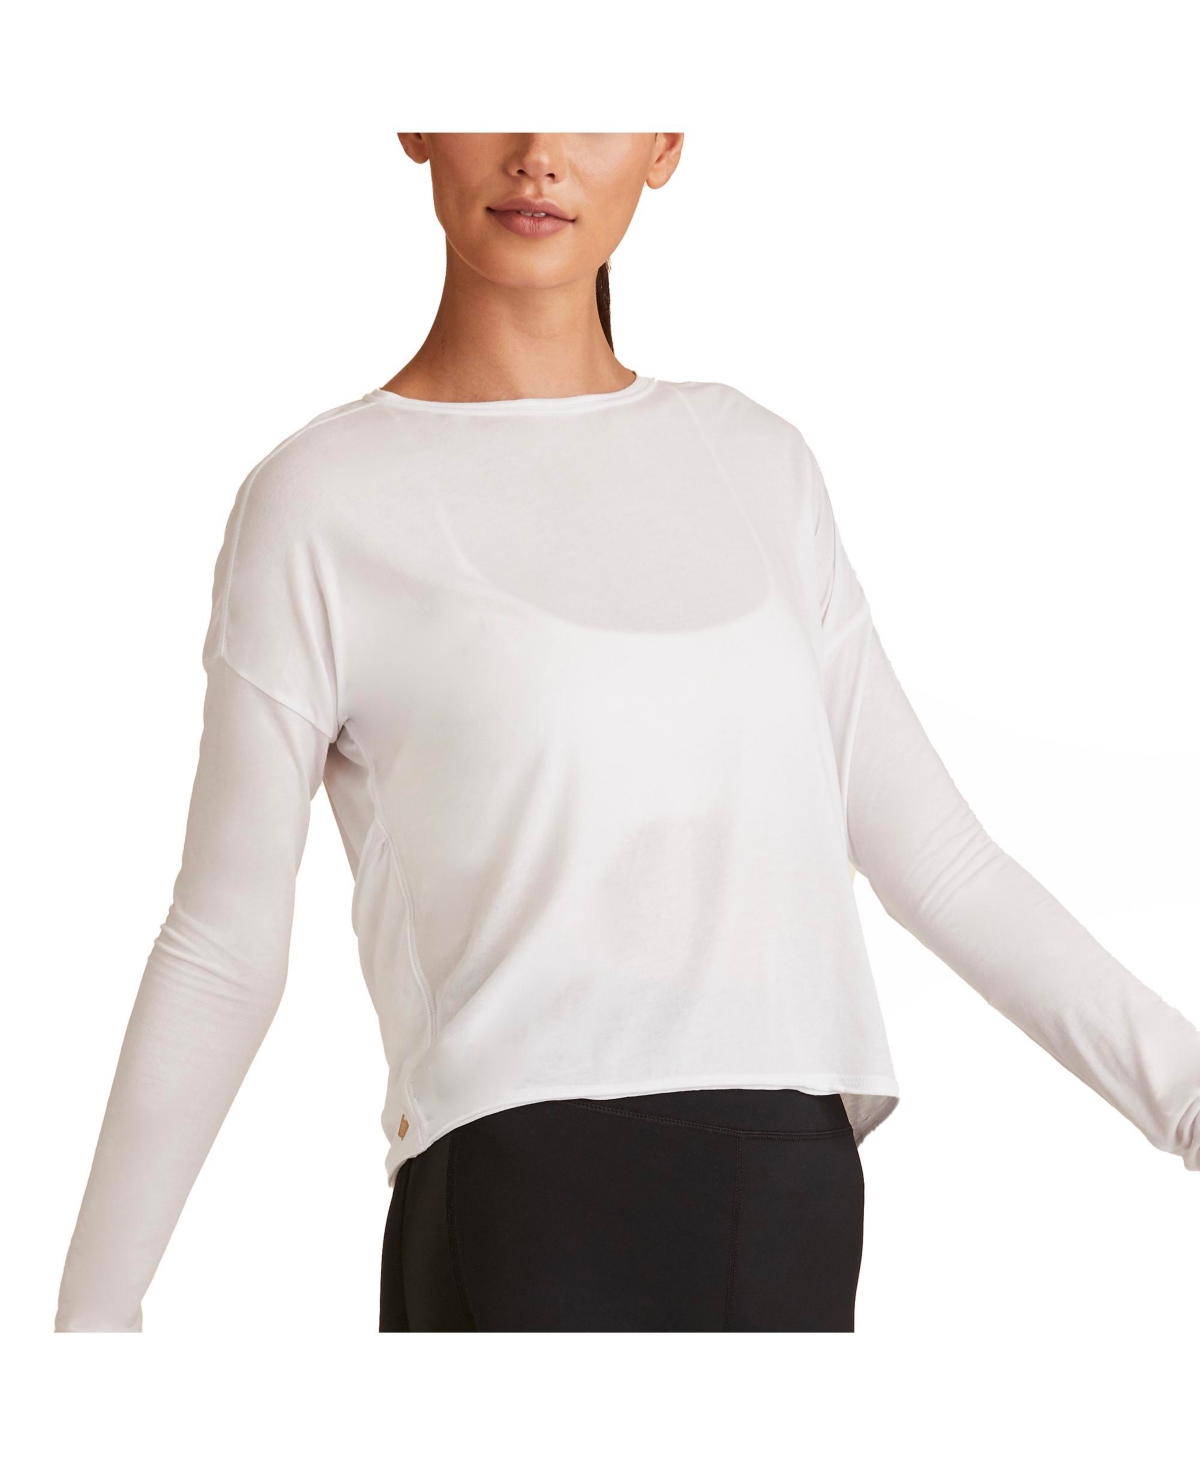 Women's Regular Size Open Back Long Sleeve T-Shirt - White